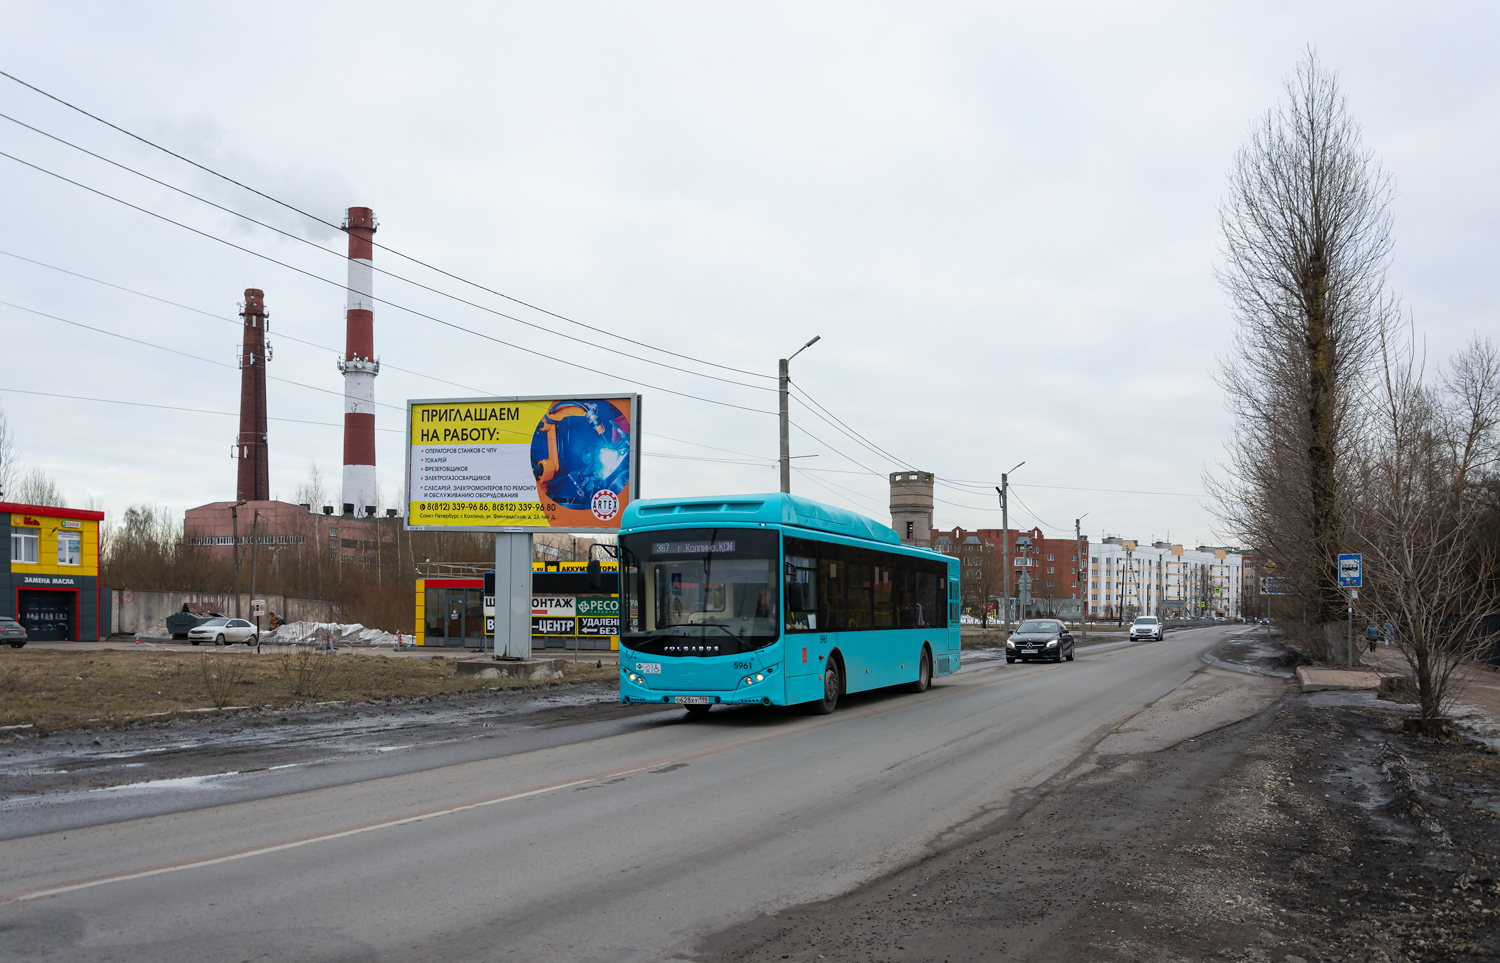 Saint Petersburg, Volgabus-5270.G2 (CNG) č. 5961